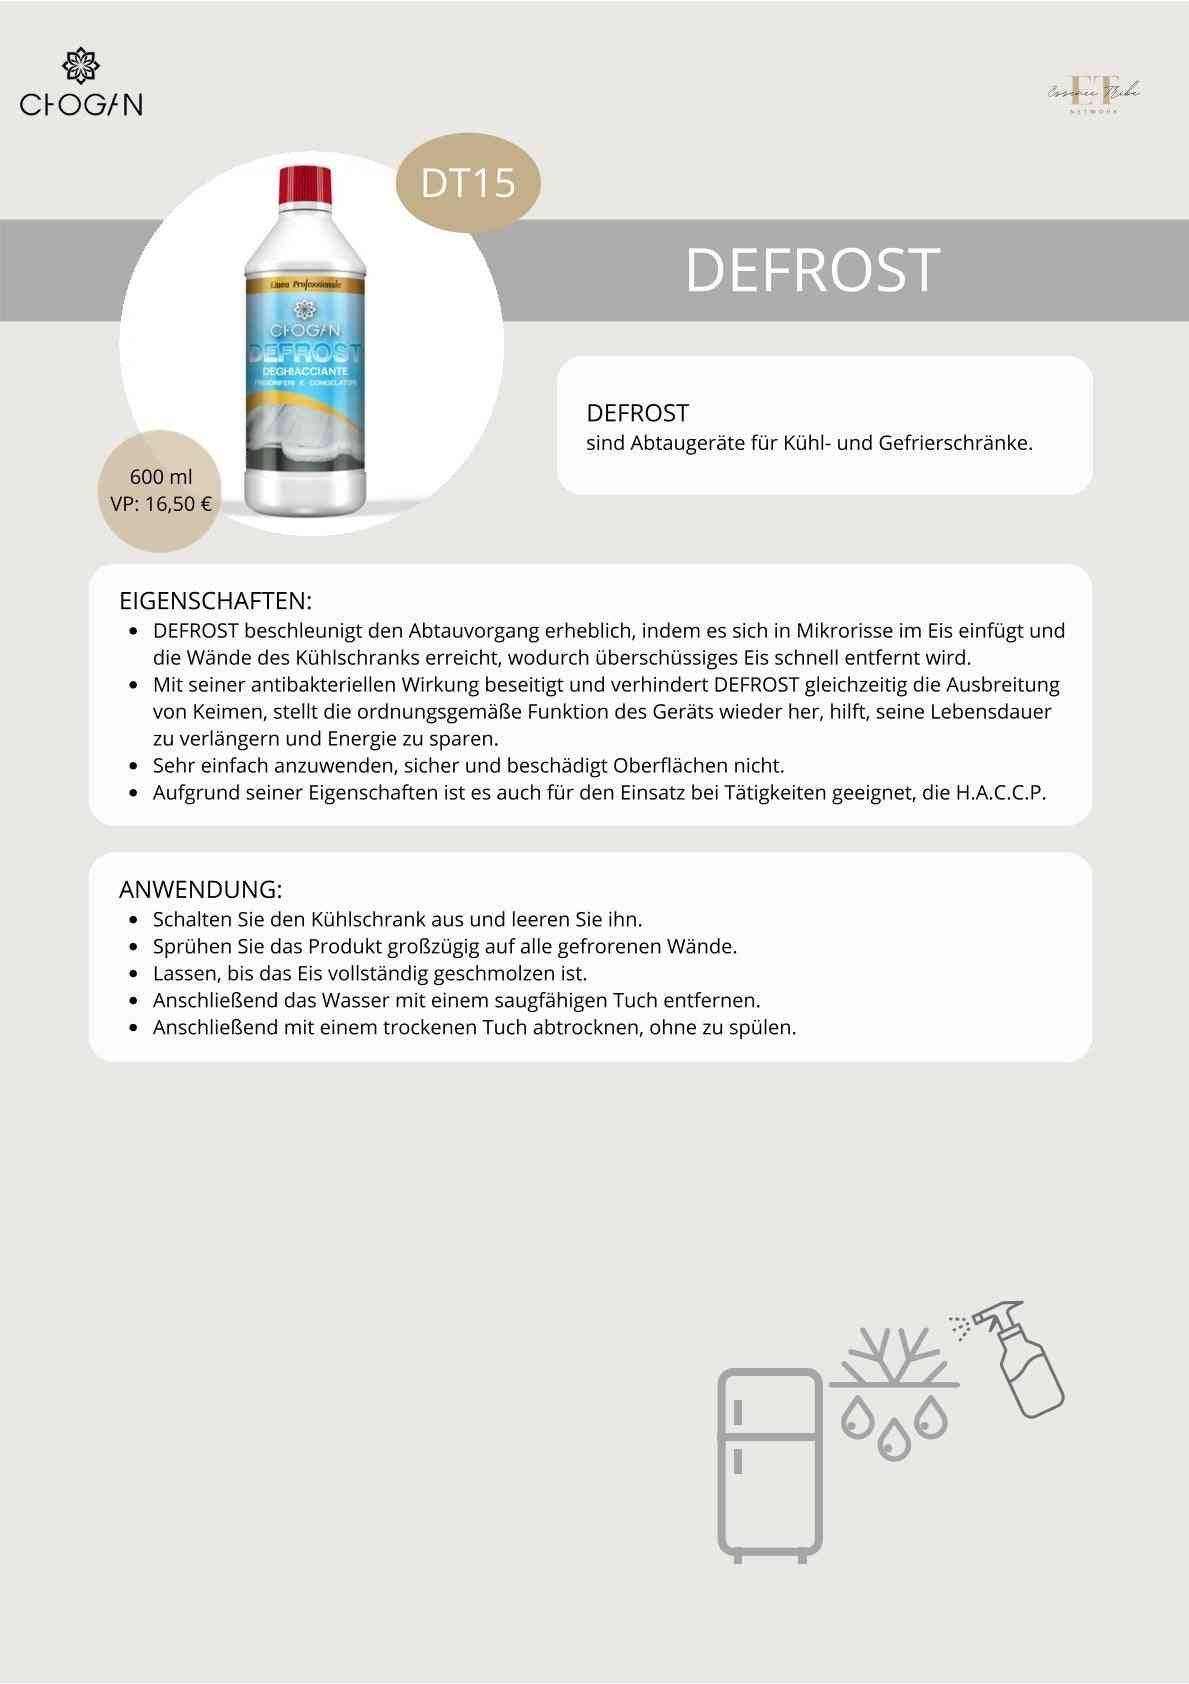 Defrost – freezer de-icer